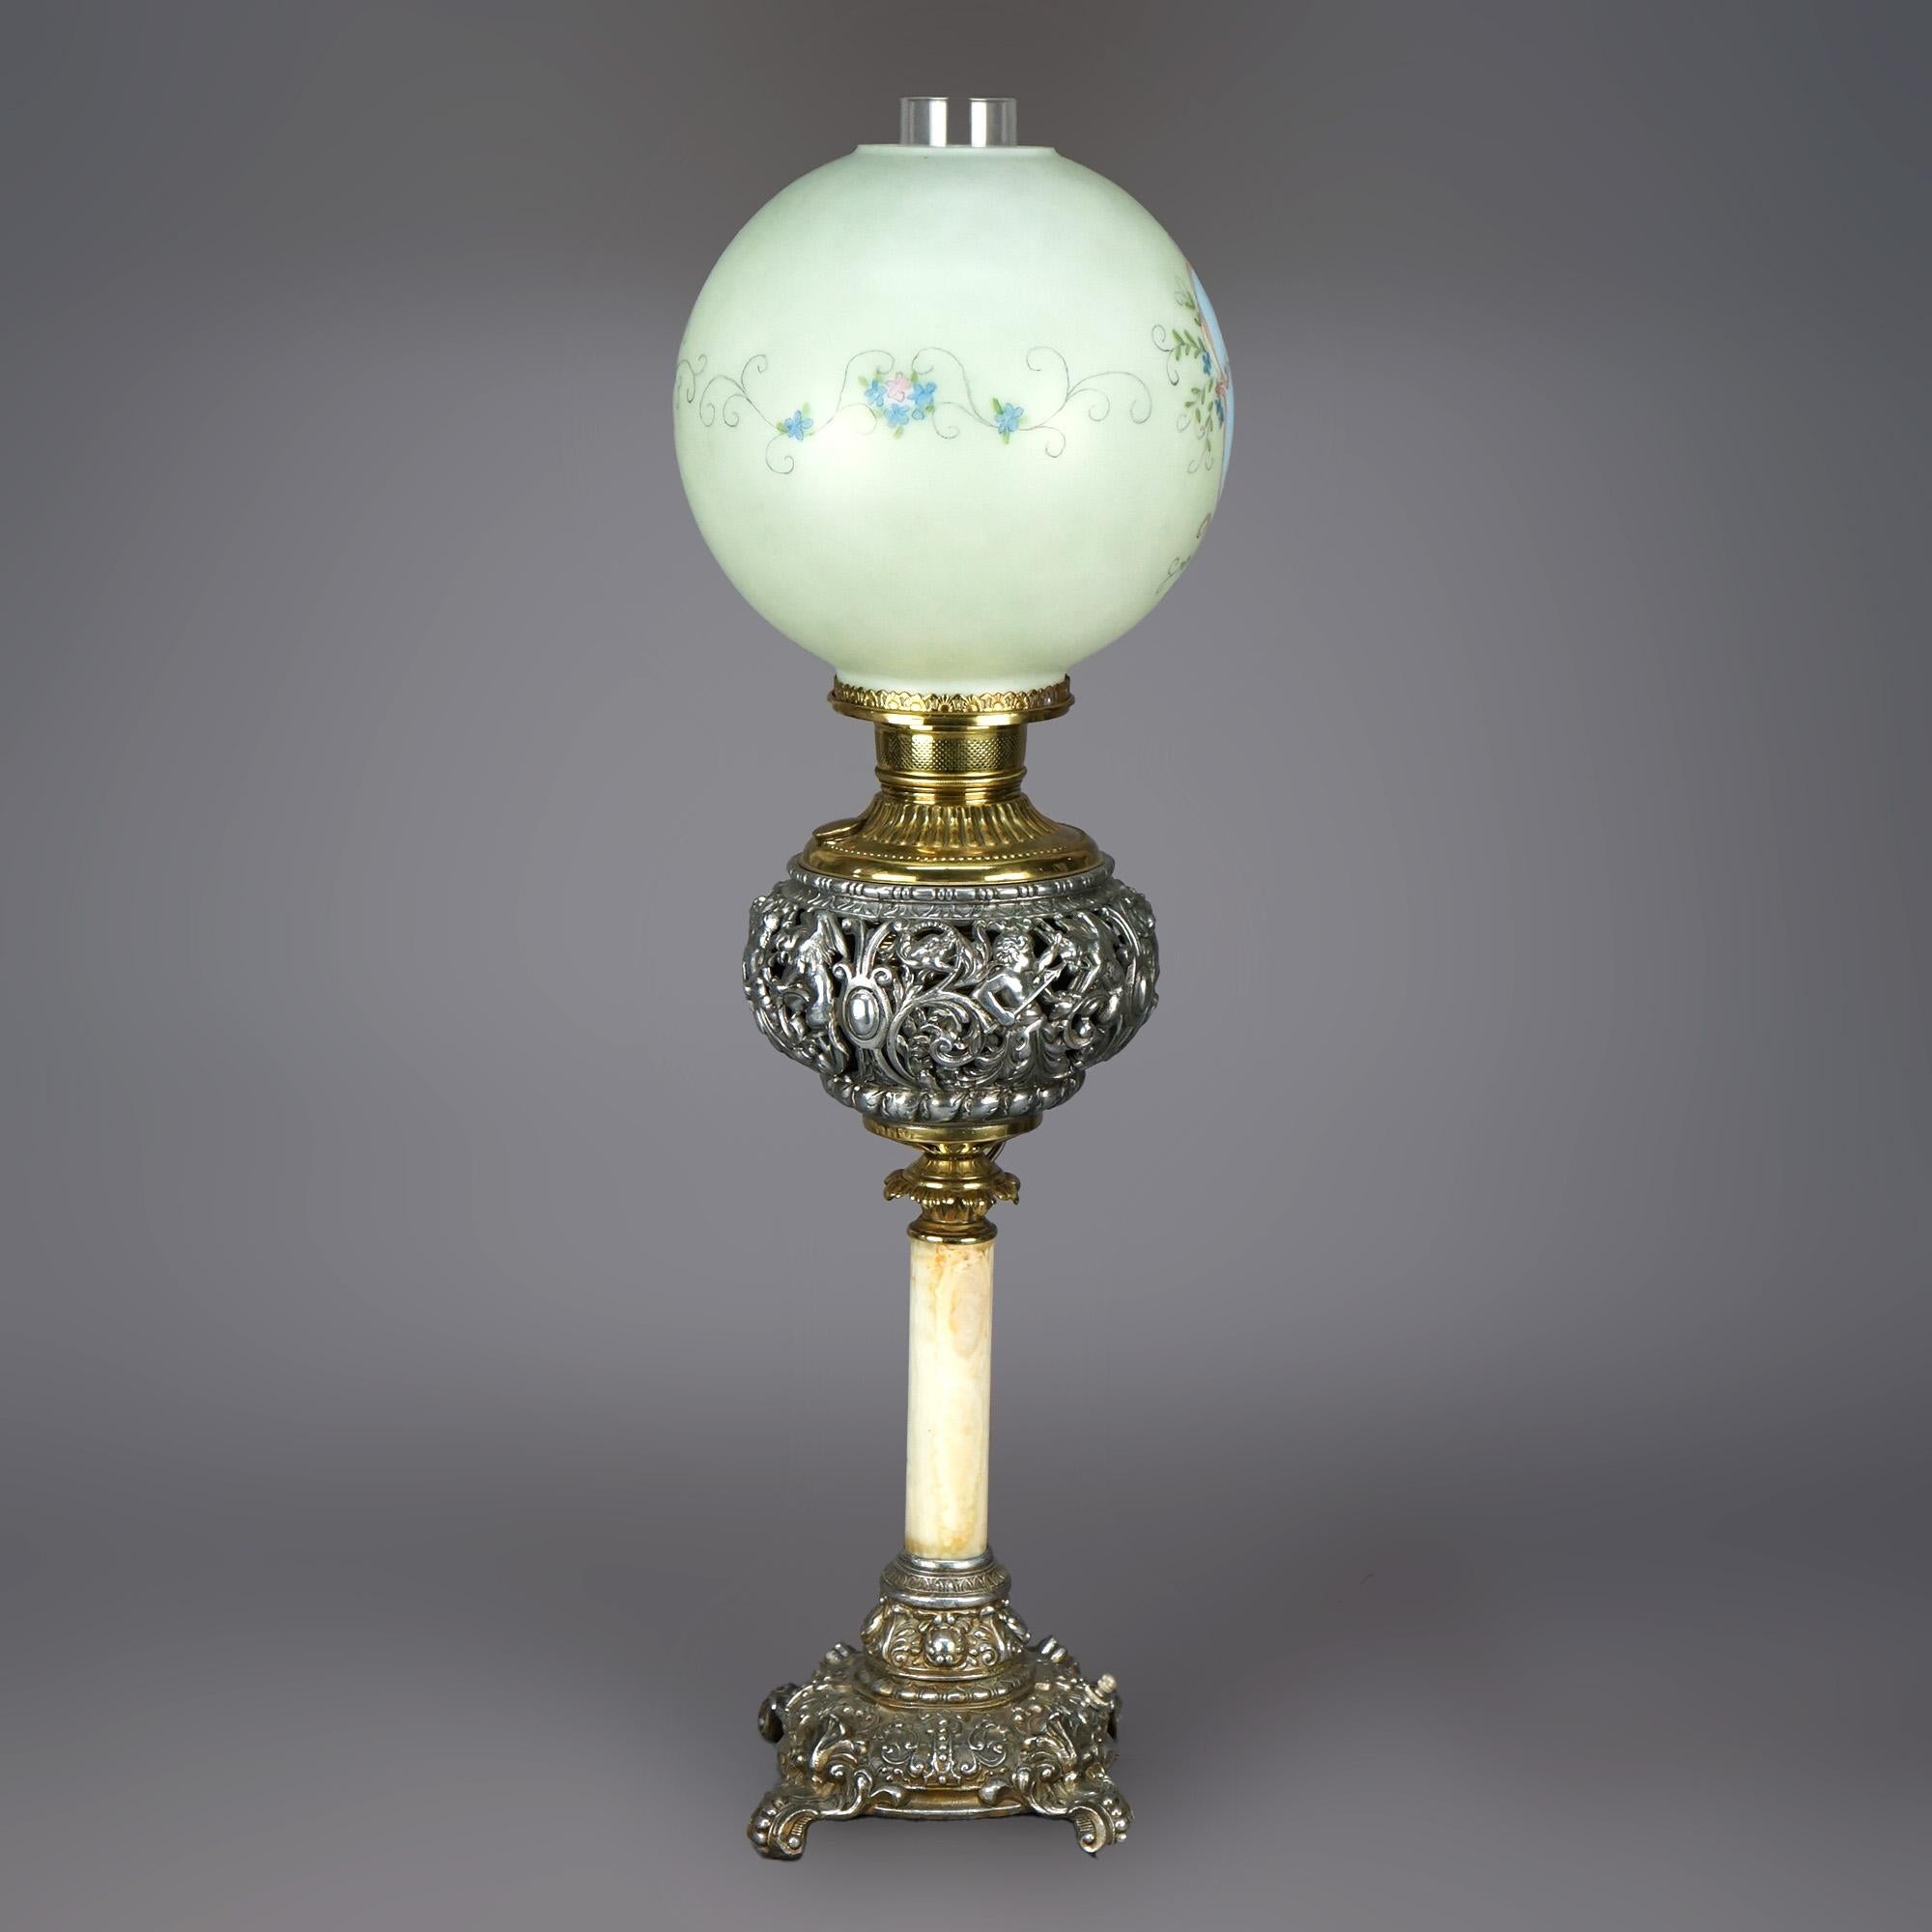 Eine antike viktorianische Wohnzimmerlampe bietet einen Glasschirm mit handgemalter Cherub-Reserve und floralen Elementen über einem Sockel mit versilbertem und vergoldetem durchbrochenem Font mit Putten und Drachen, der auf einer einzigen Säule und